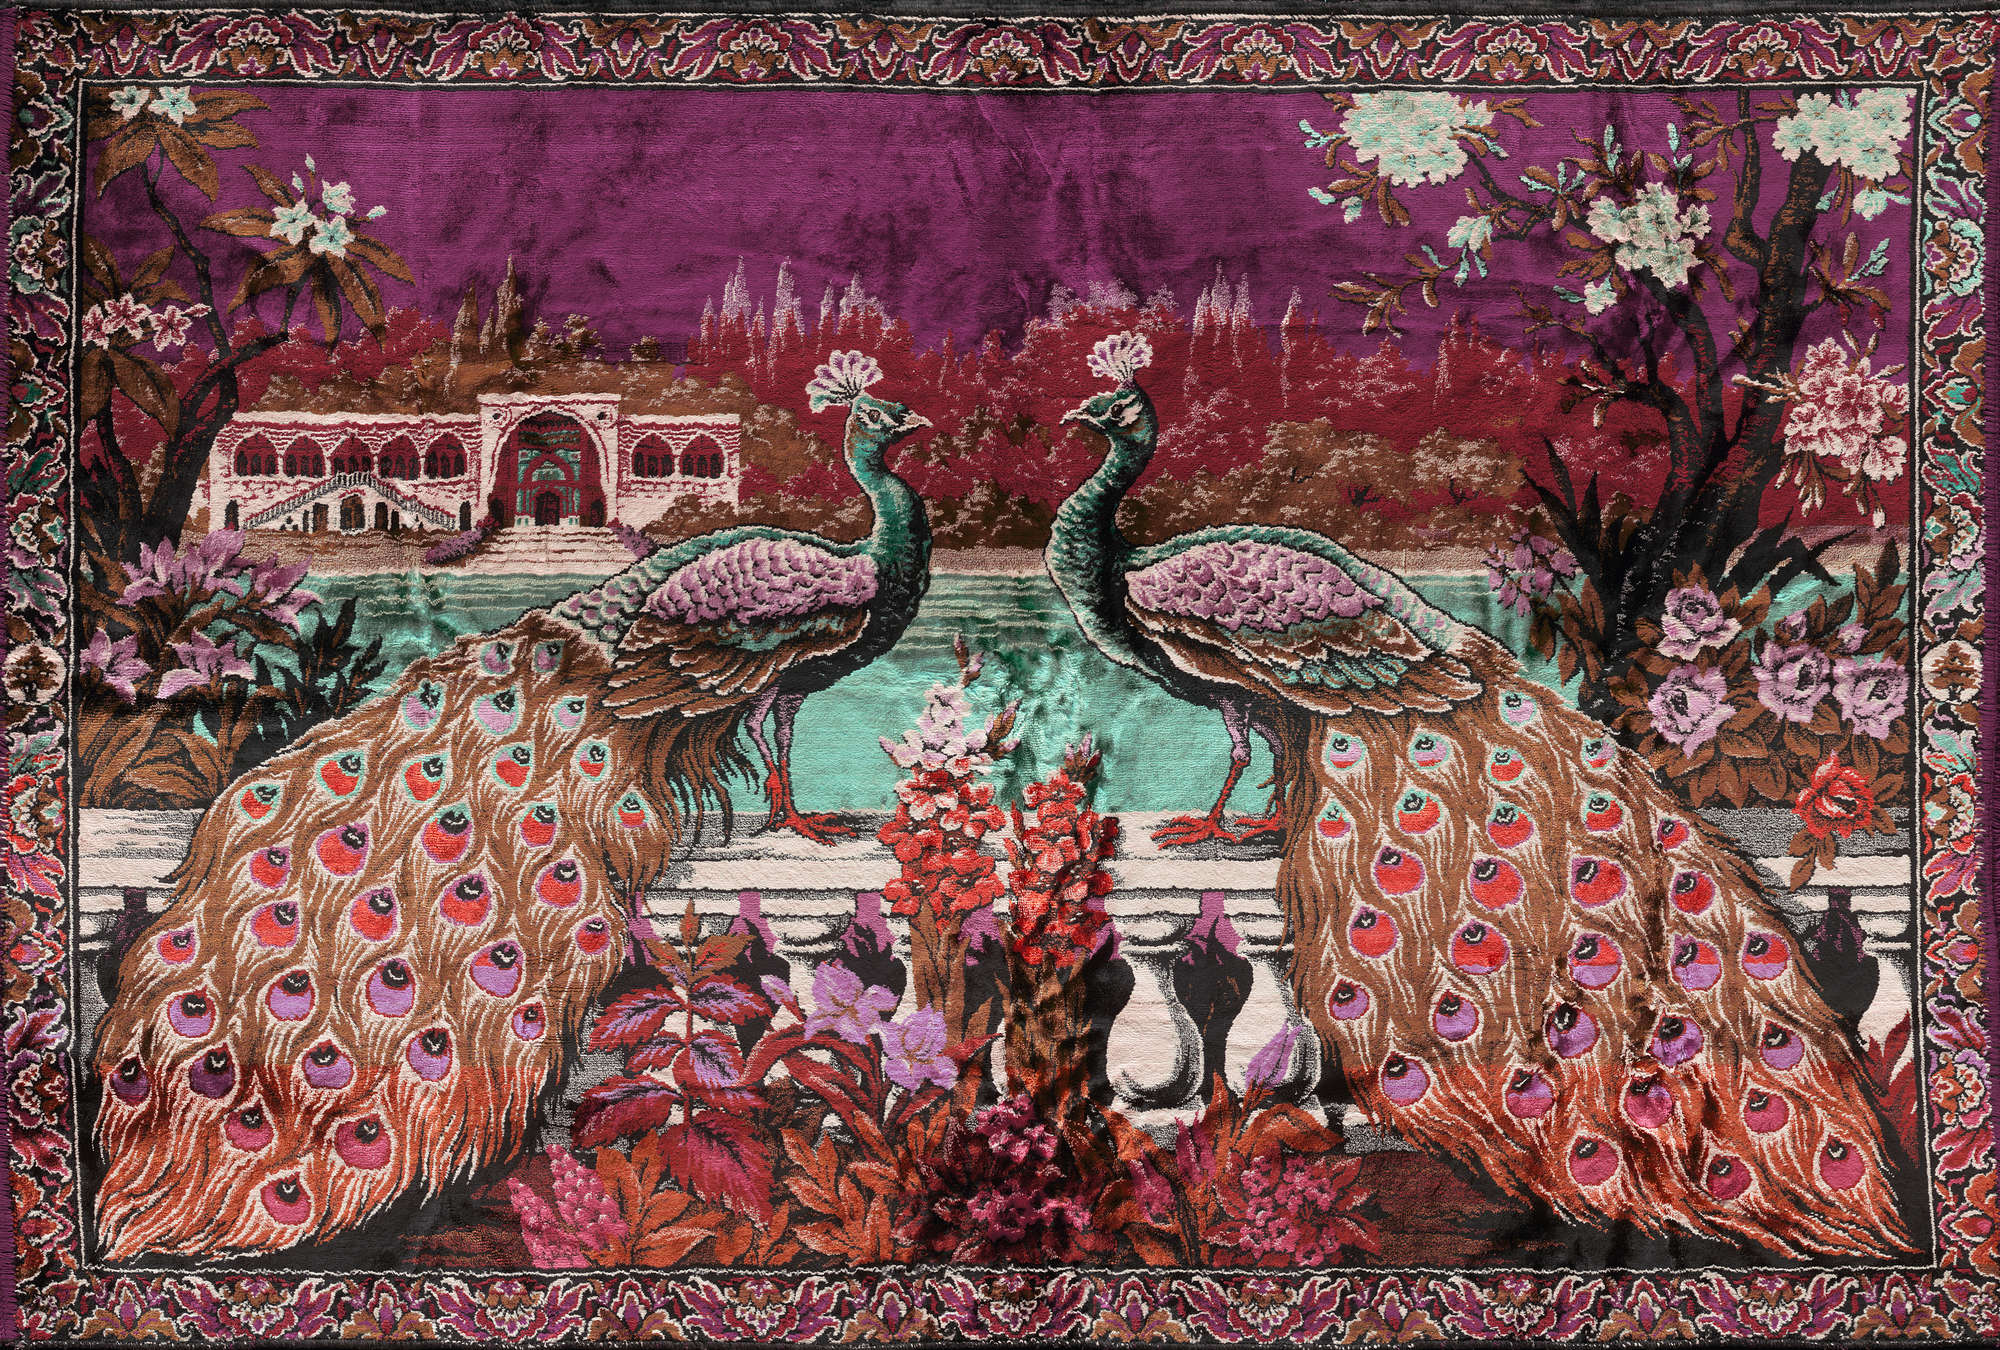             Fototapete Indien Dekor, exotischer Pfau – Violett, Blau, Rosa
        